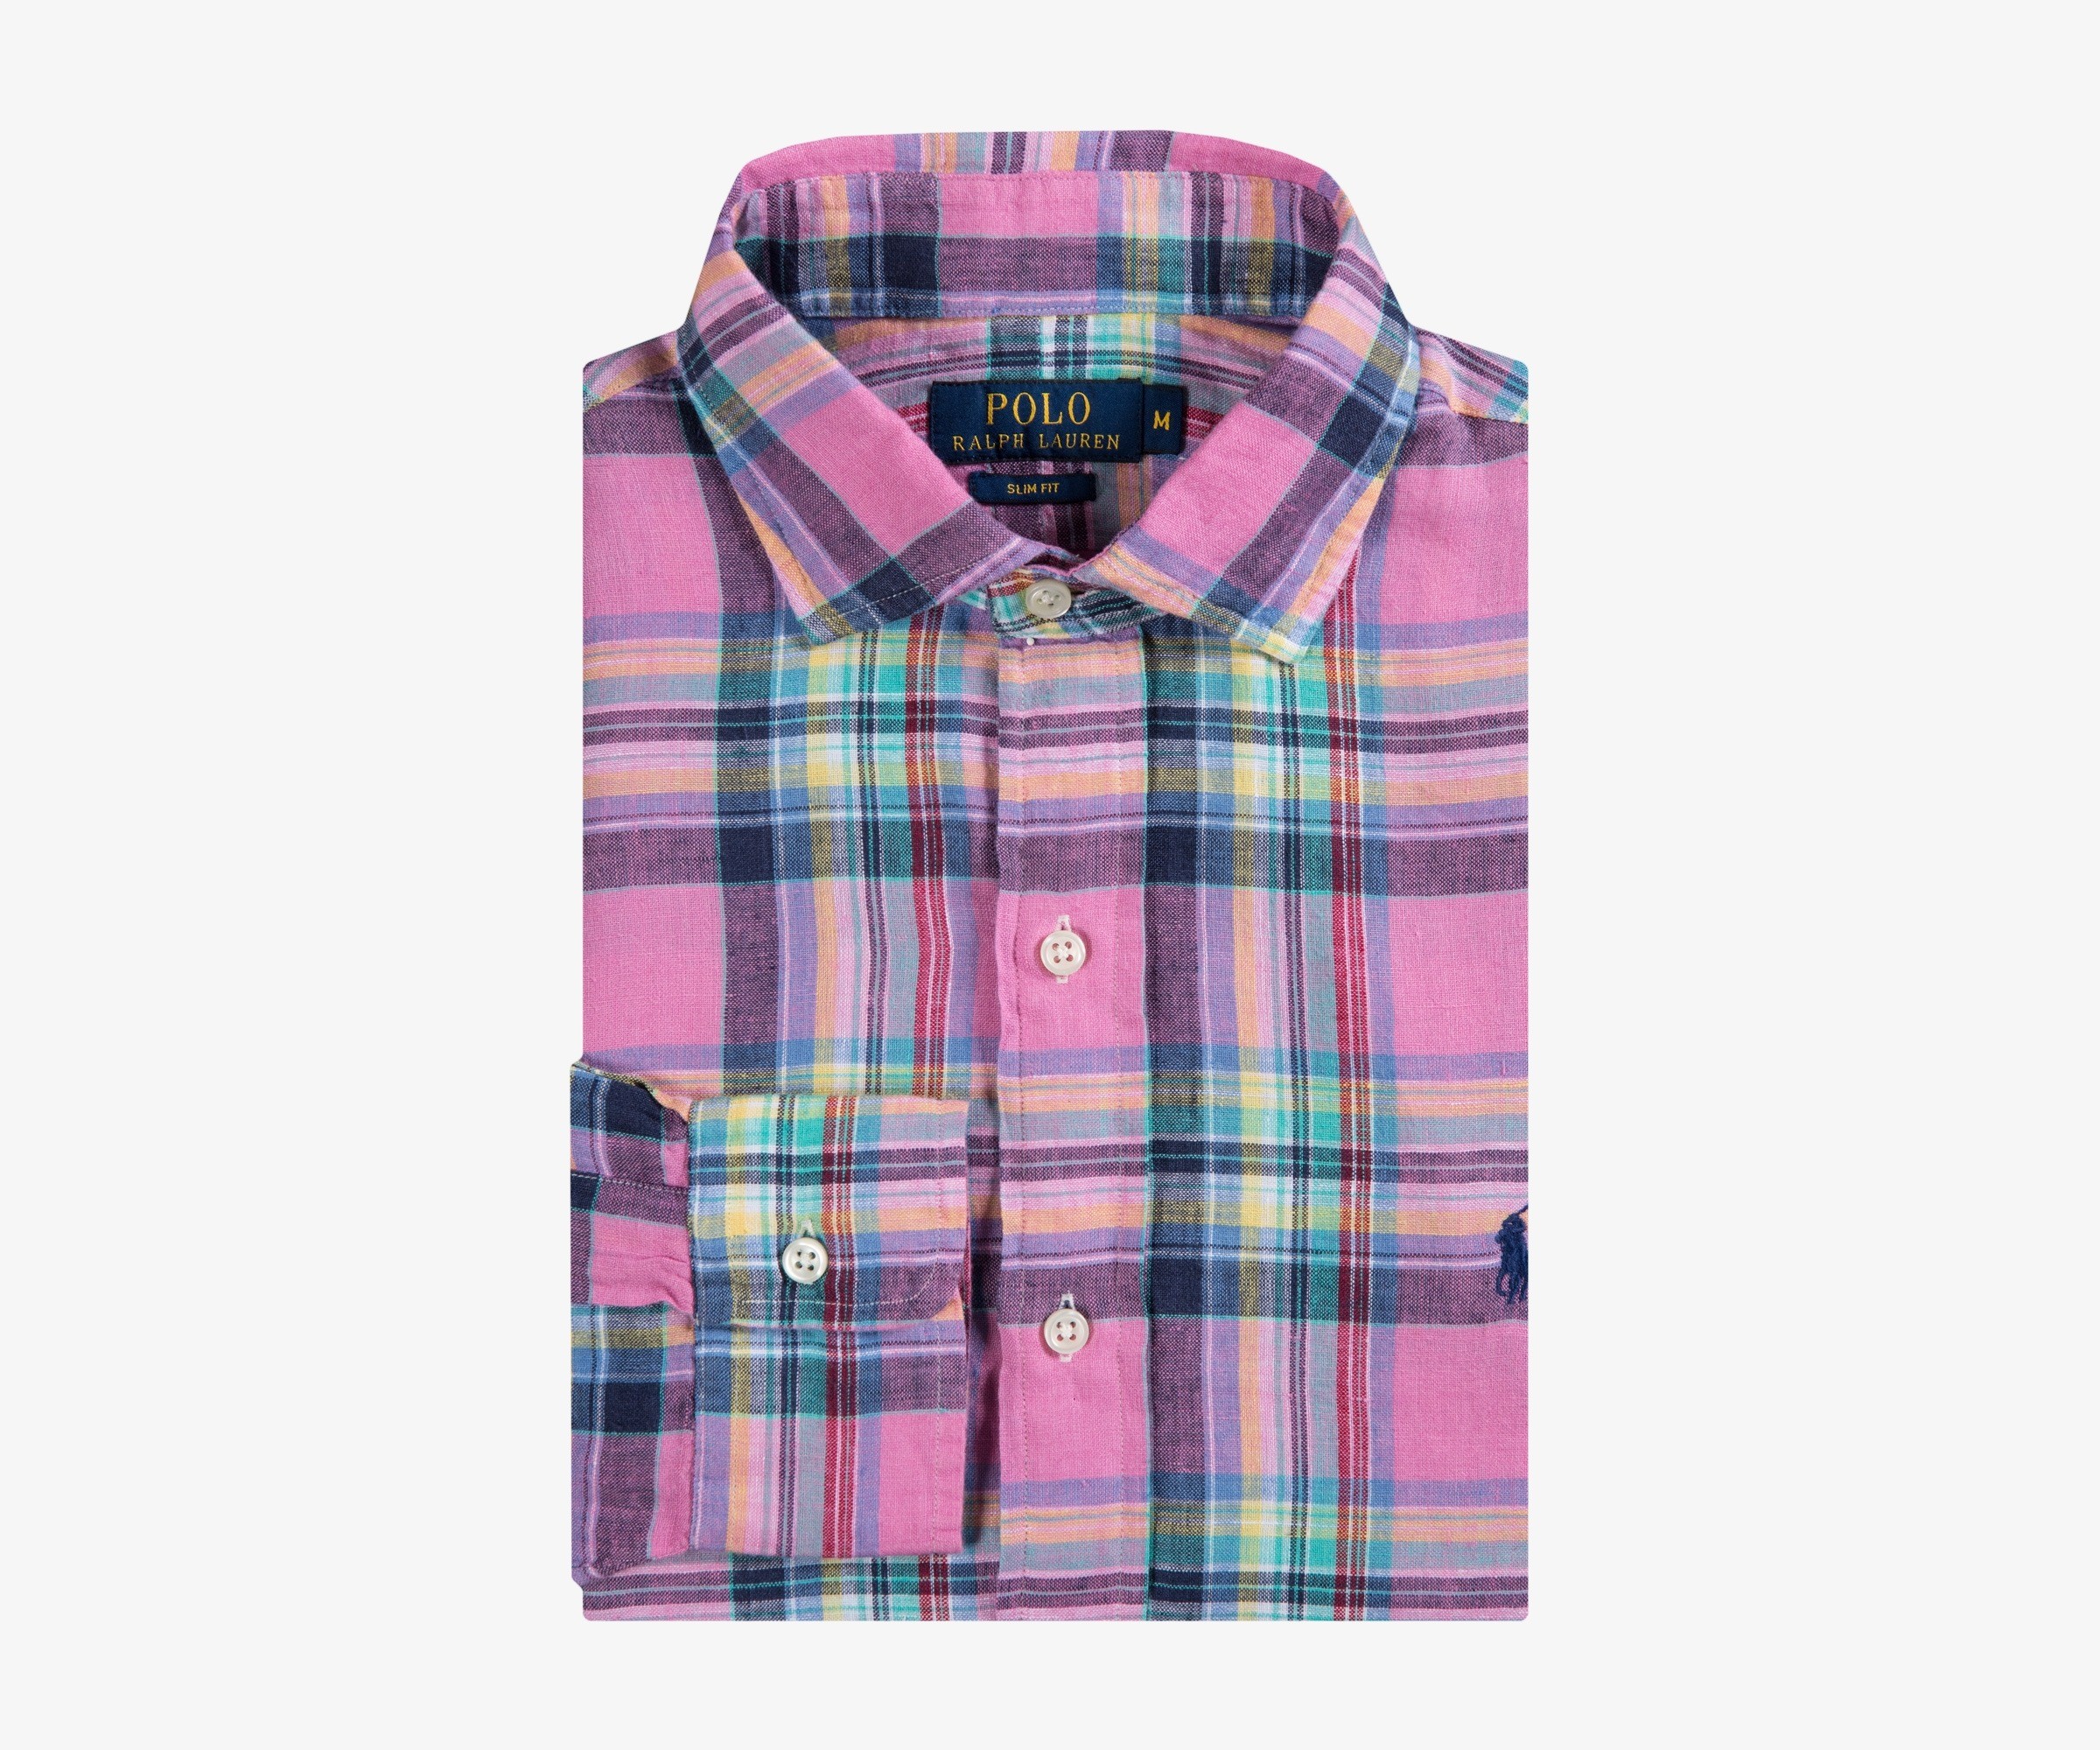 Polo Ralph Lauren Linen Check Shirt Pink/Navy Multi